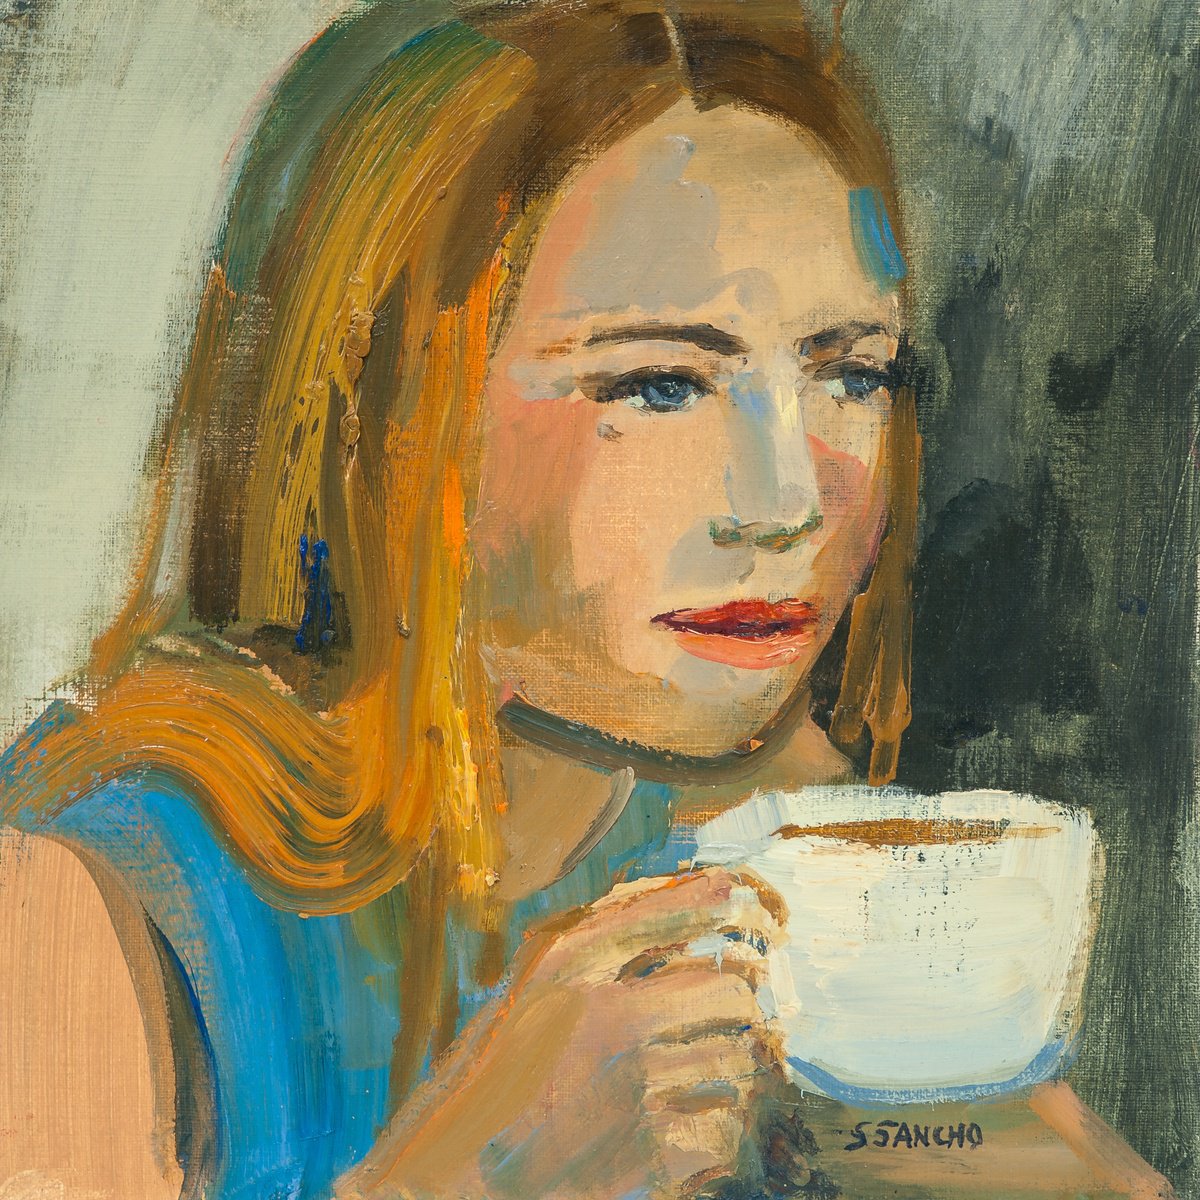 Coffee by Susana Sancho Beltr�n